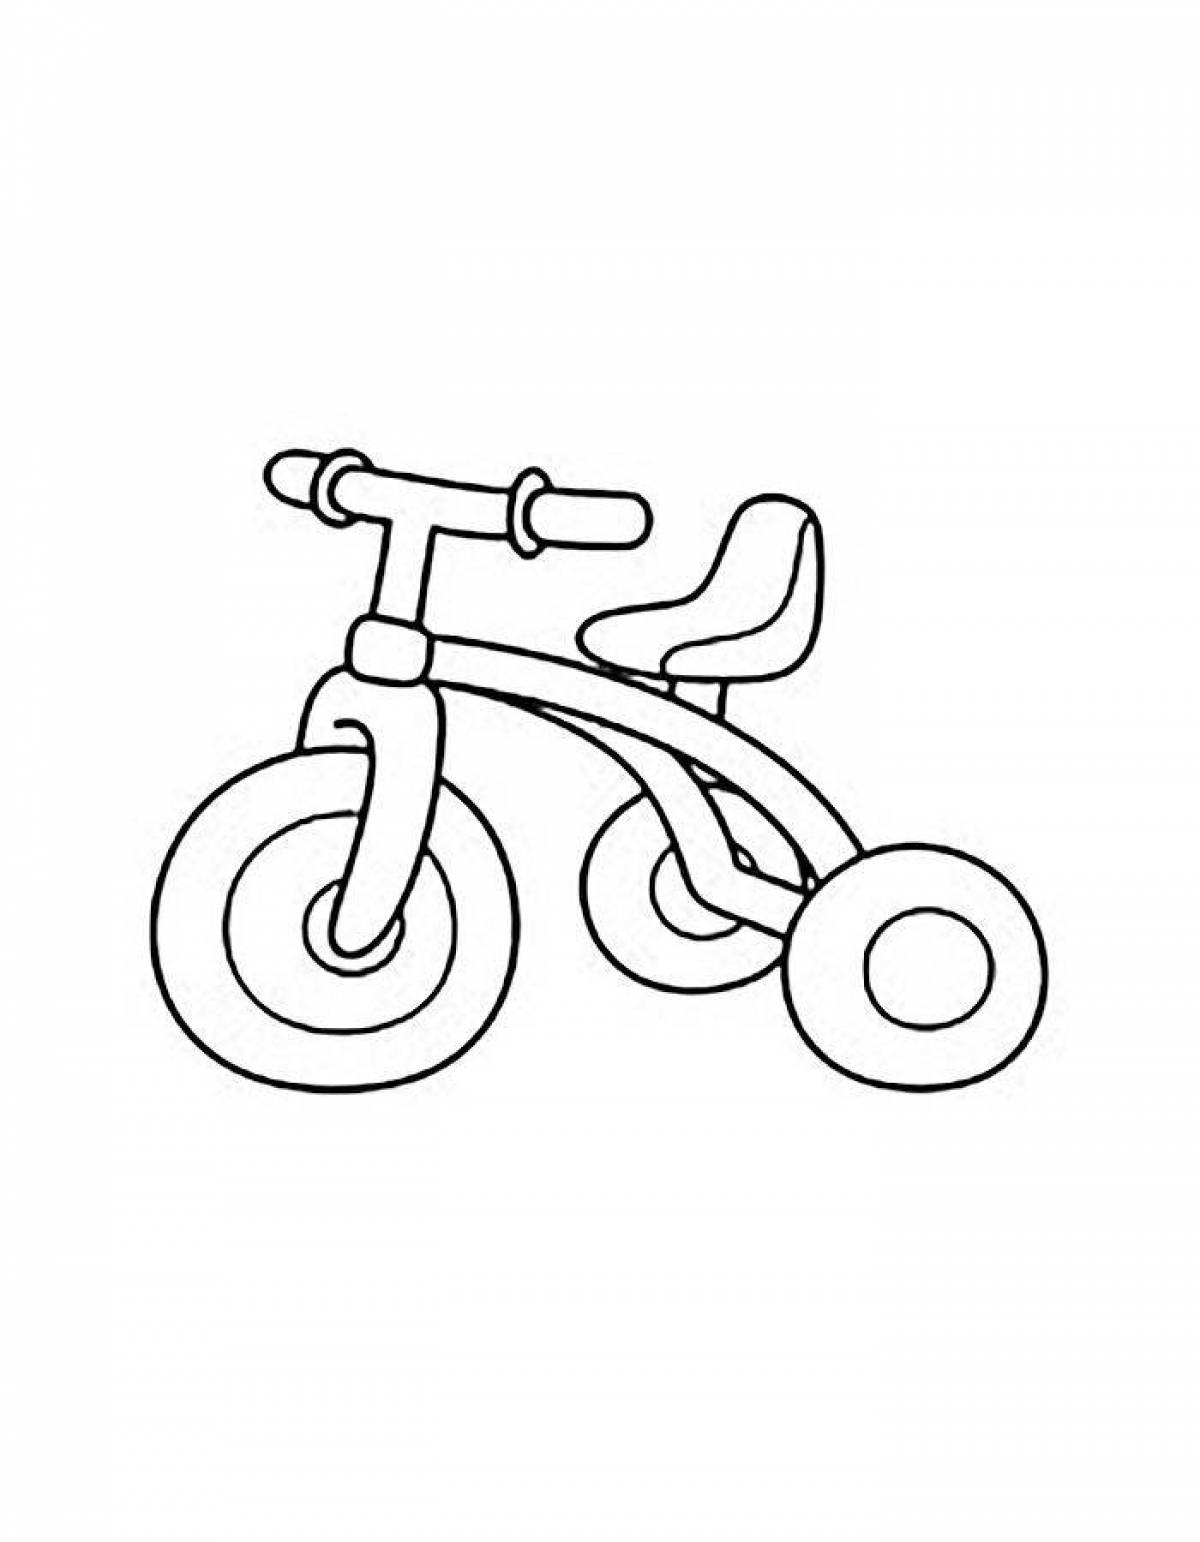 Children's bike #1